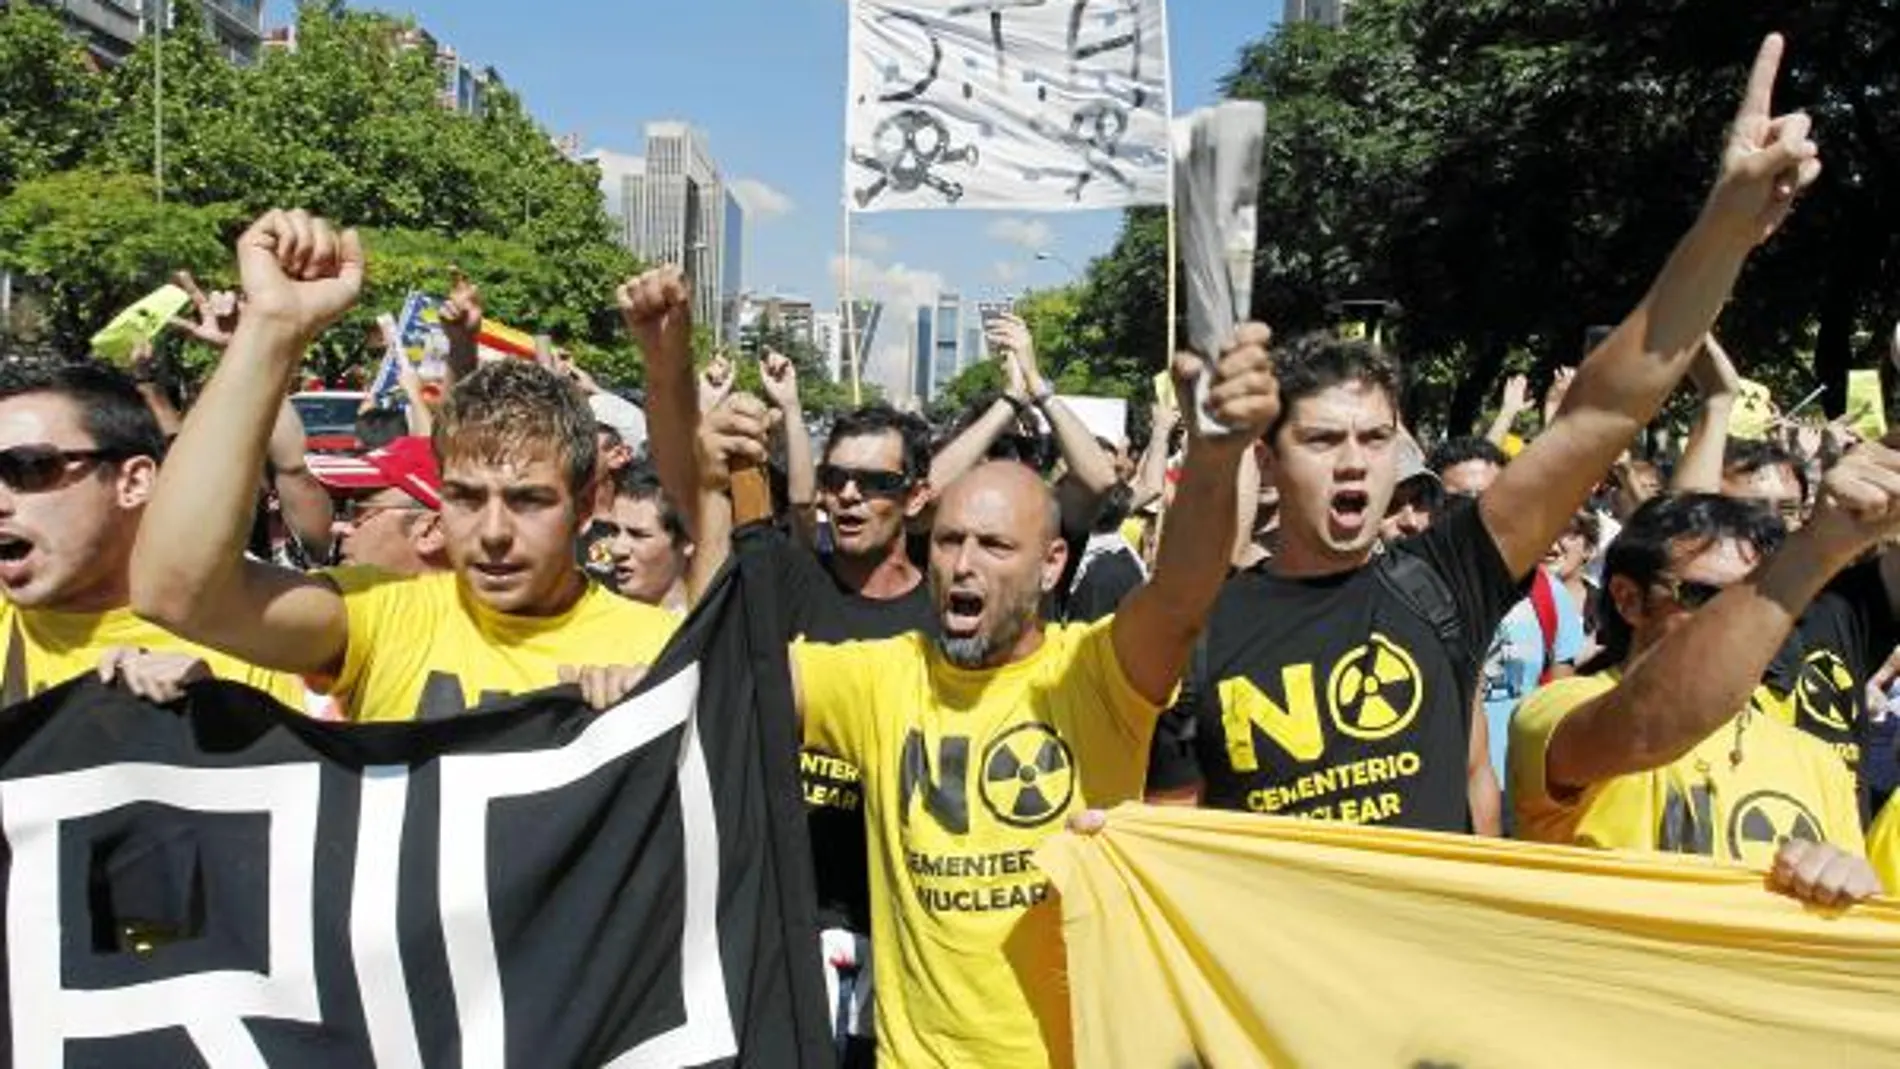 Decenas de antinucleares, la mayoría llegados de Valencia, cortaron ayer el Paseo de la Castellana, en Madrid, para mostrar su rechazo al almacén de residuos